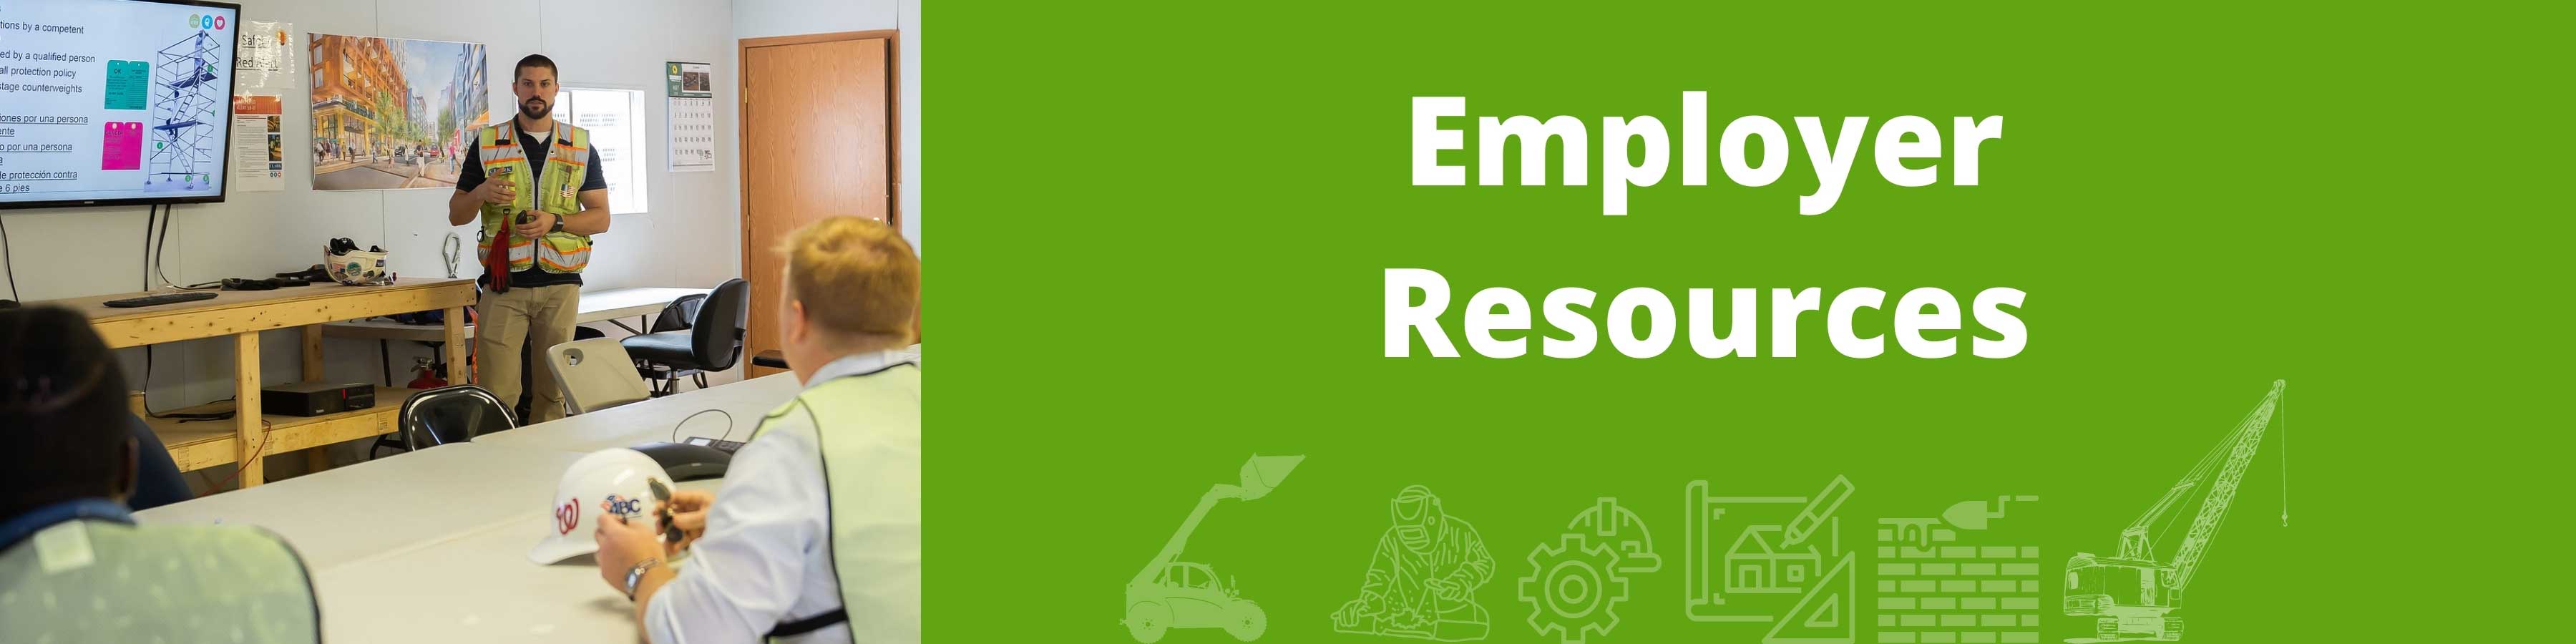 Employer-Resources-Header